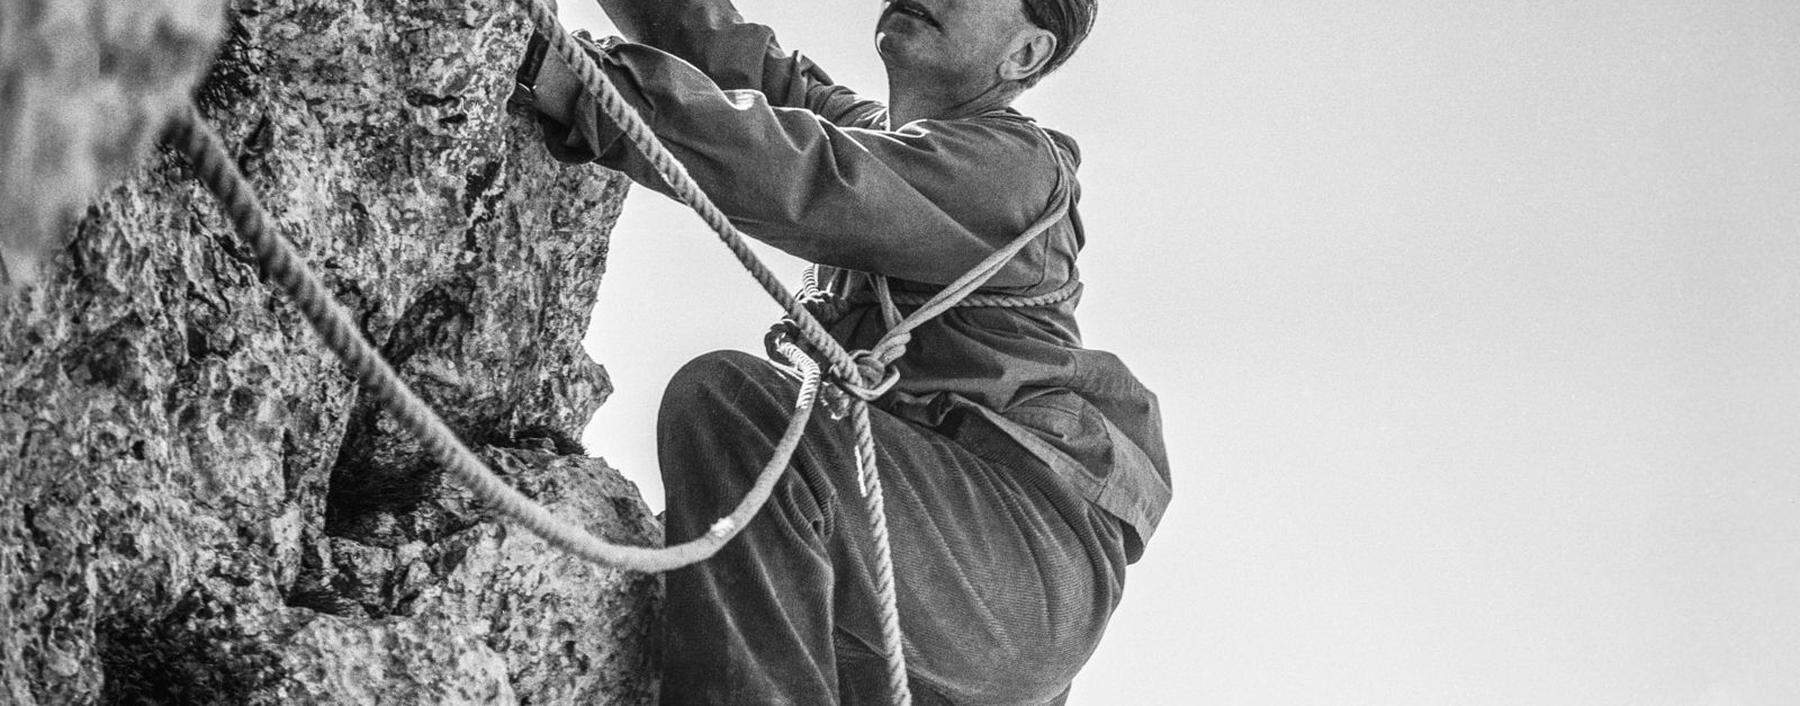 Viktor Frankl, der Begründer der Logotherapie, war ein begeisterter Bergsteiger.